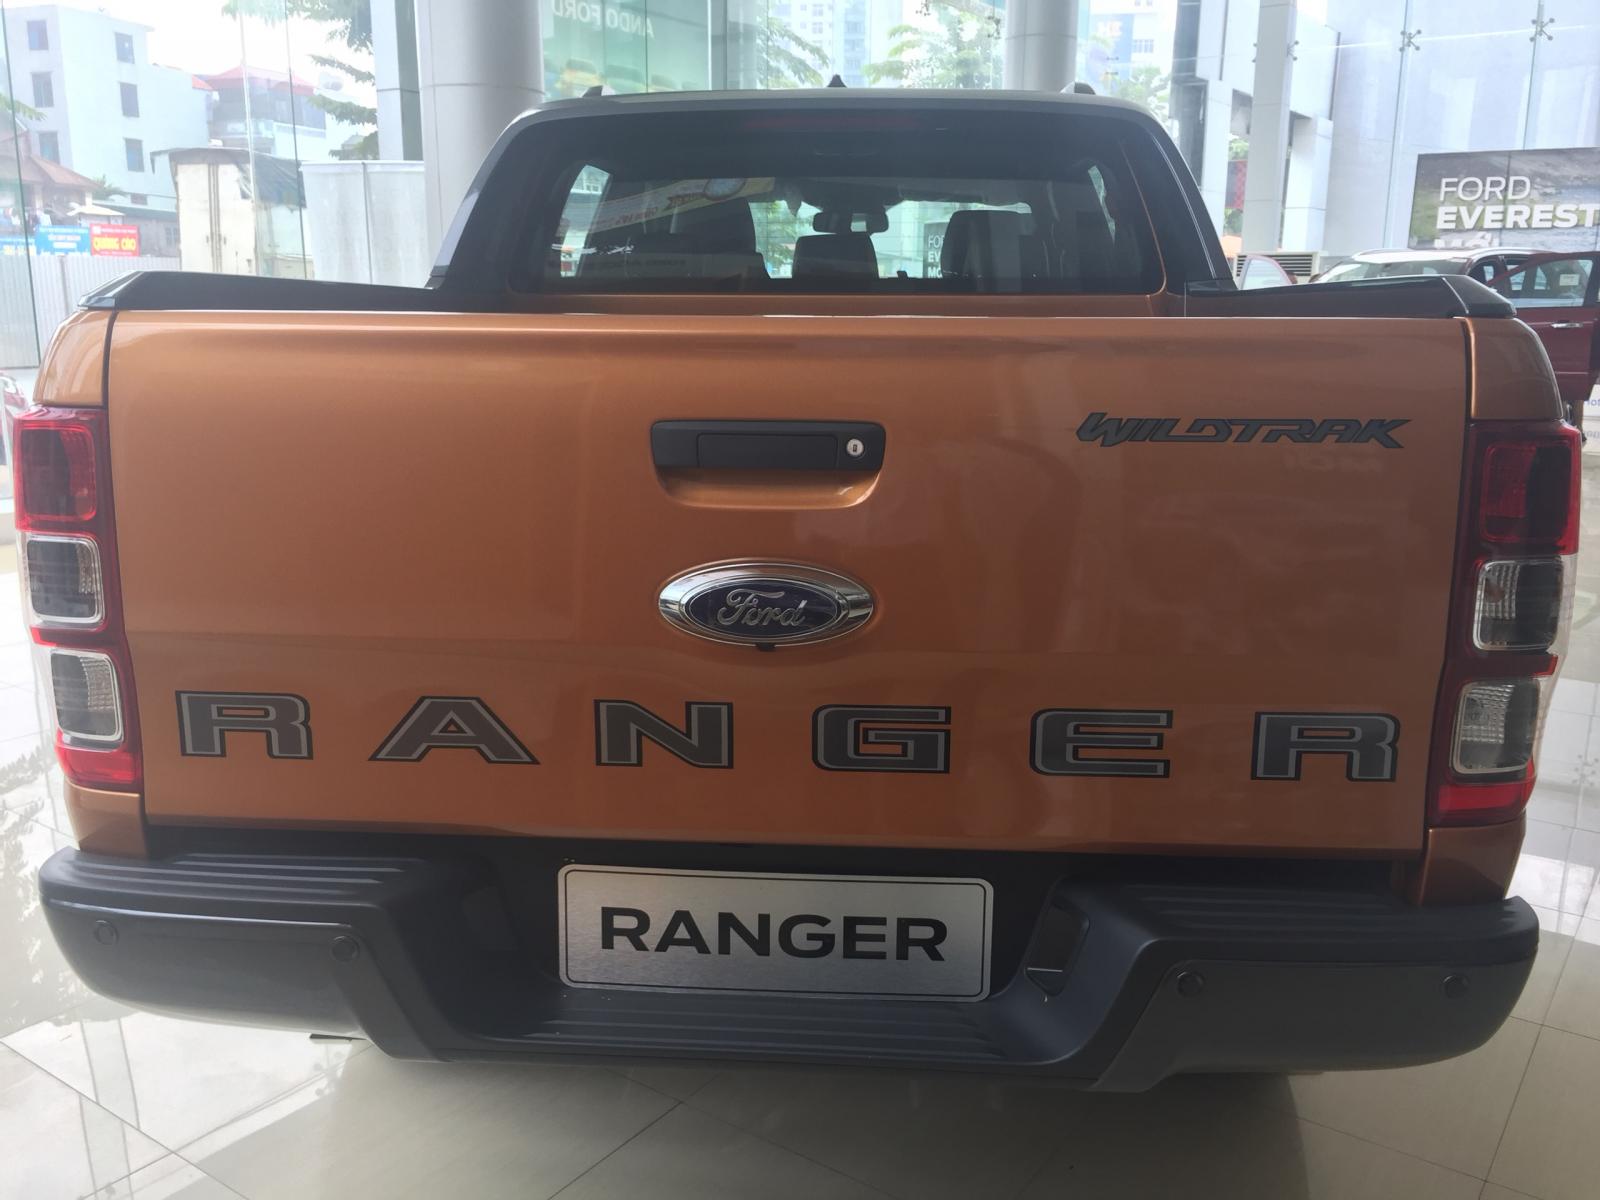 Ranger tất cả các phiên bản, giá tốt nhất thị trường, giá chỉ từ 650tr, call 0865660630-5